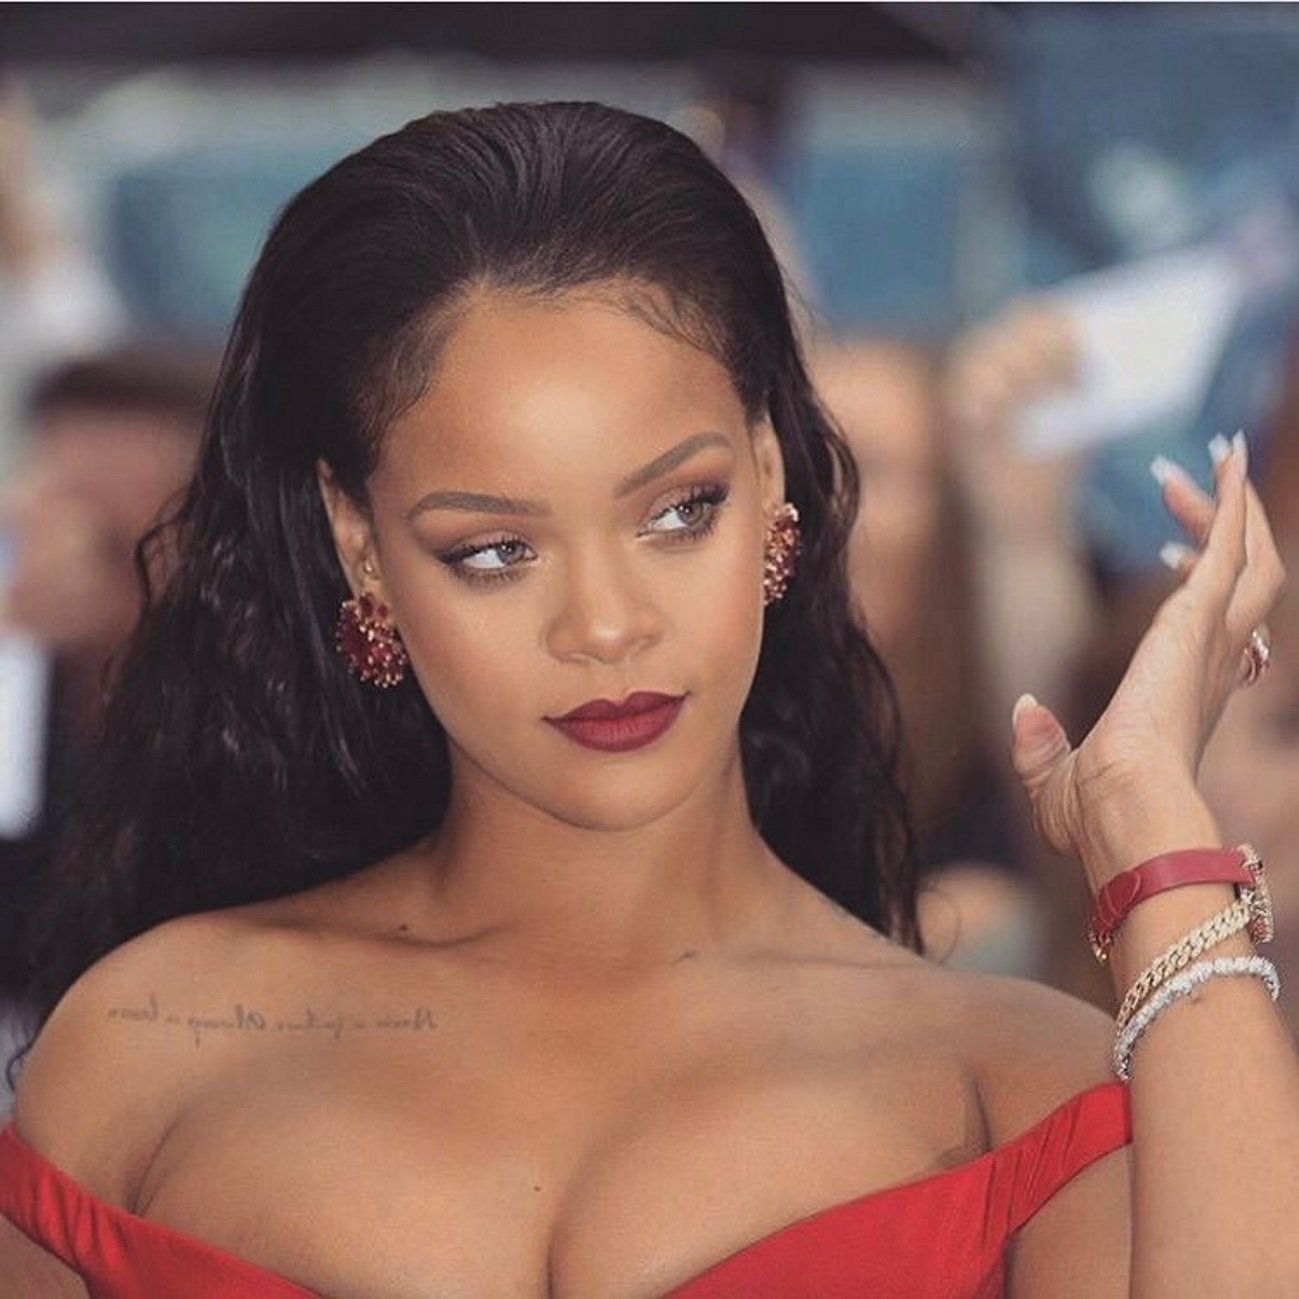 “¿Esa mujer es Rihanna?”. Foto en el aeropuerto de Nueva York. “El Photoshop hace milagros”